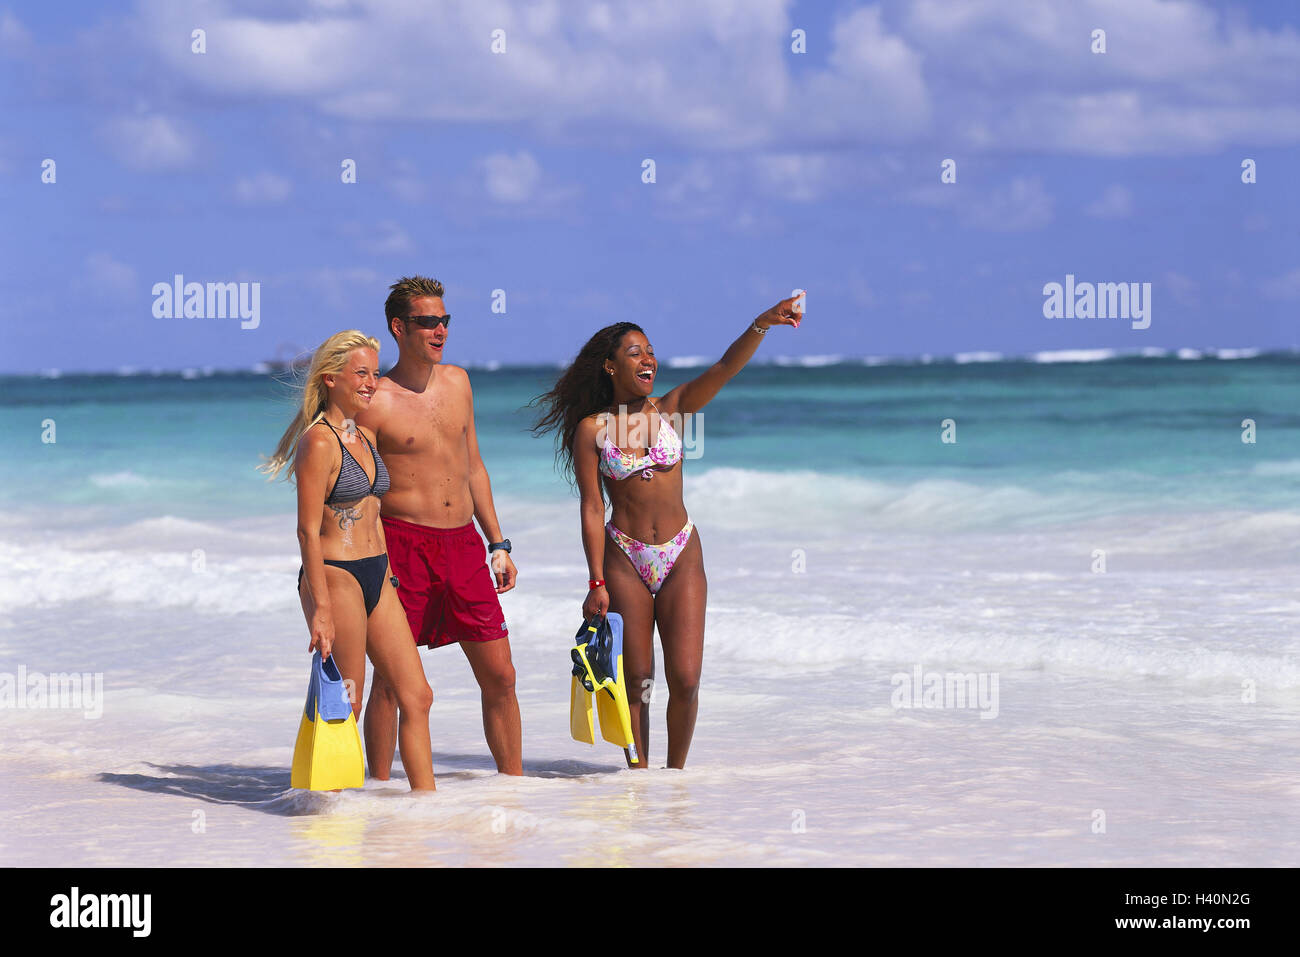 La République dominicaine, Punta Cana, Bavaro, la plage, les femmes, les deux, l'homme, de l'eau, faible profondeur, rendez-vous, femme, point jeunes, à pied, locations, natation palmes, femme Banque D'Images